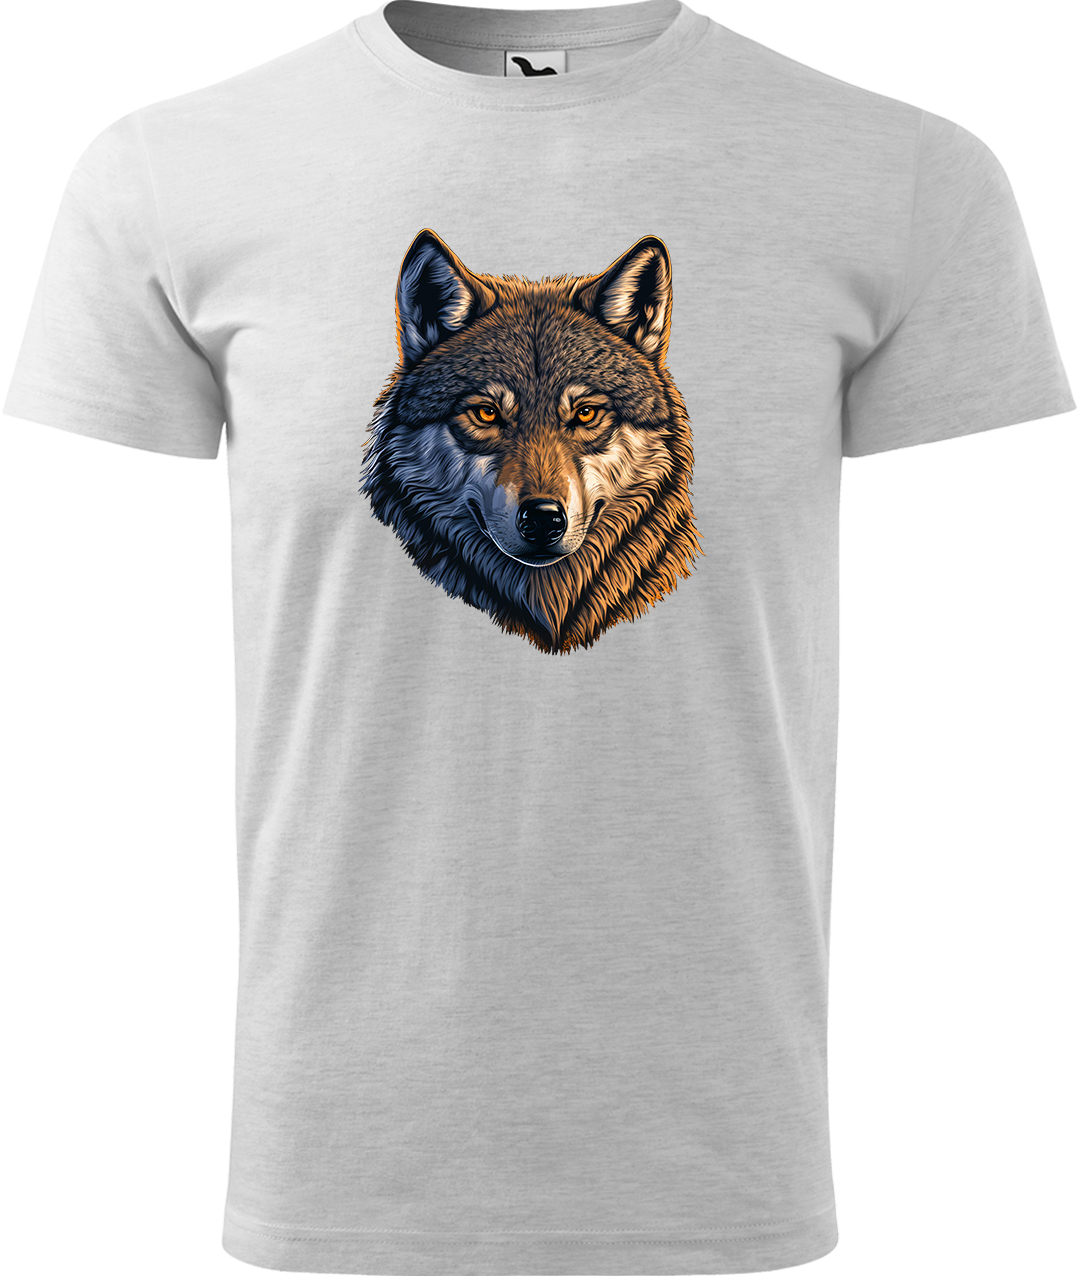 Pánské tričko s vlkem - Hlava vlka Velikost: 3XL, Barva: Světle šedý melír (03), Střih: pánský